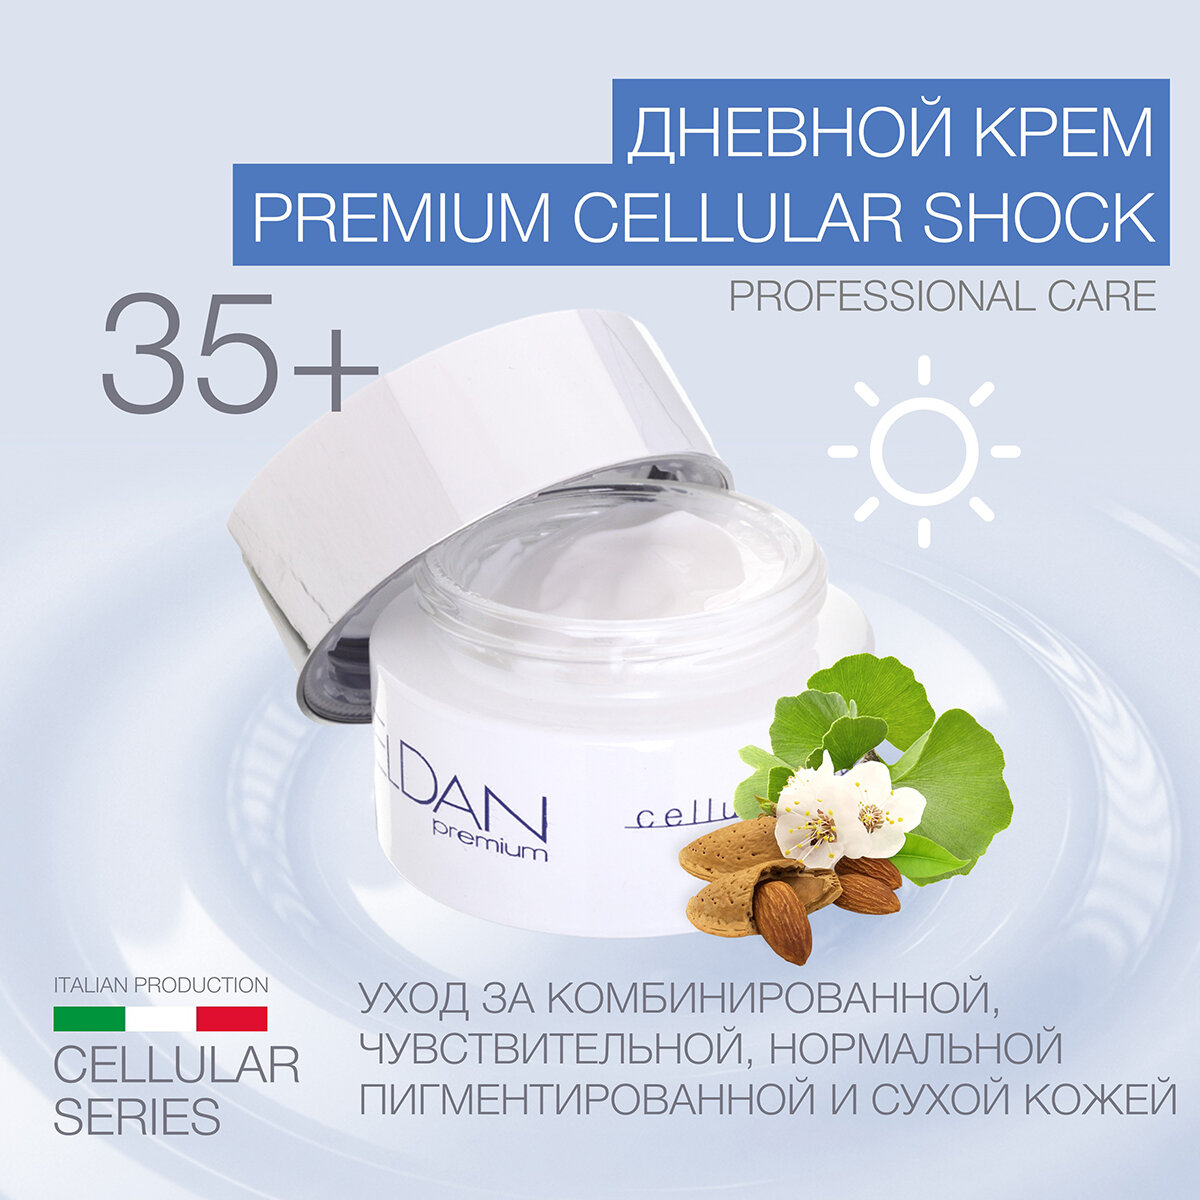 Дневной крем "Premium cellular shock" ELDAN cosmetics для увядающей кожи любого типа, 50 мл